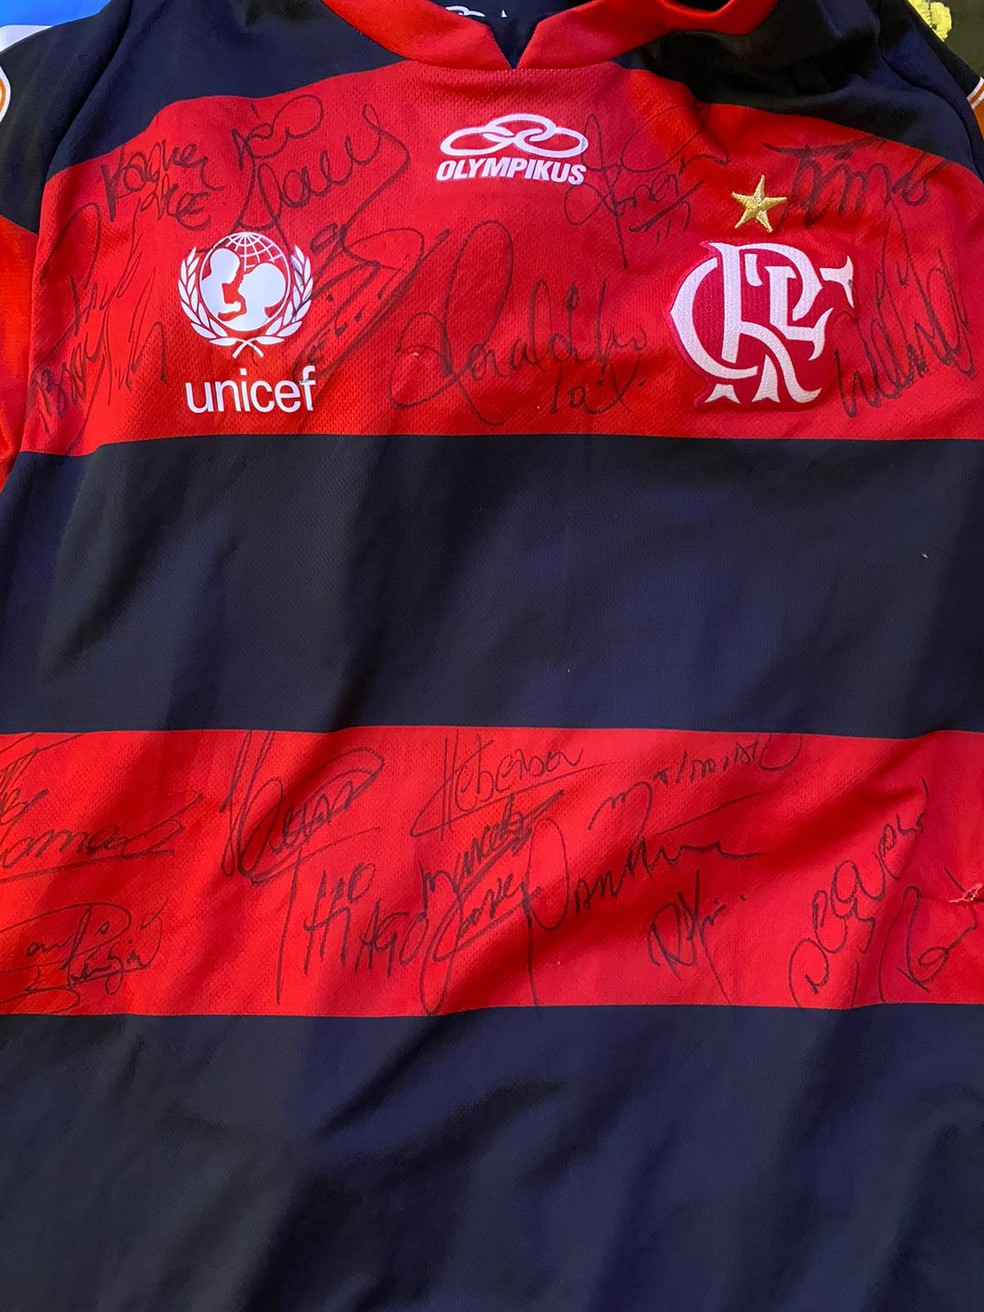 Camisa do Flamengo autografada de presente para Jorginho — Foto: Arquivo pessoal